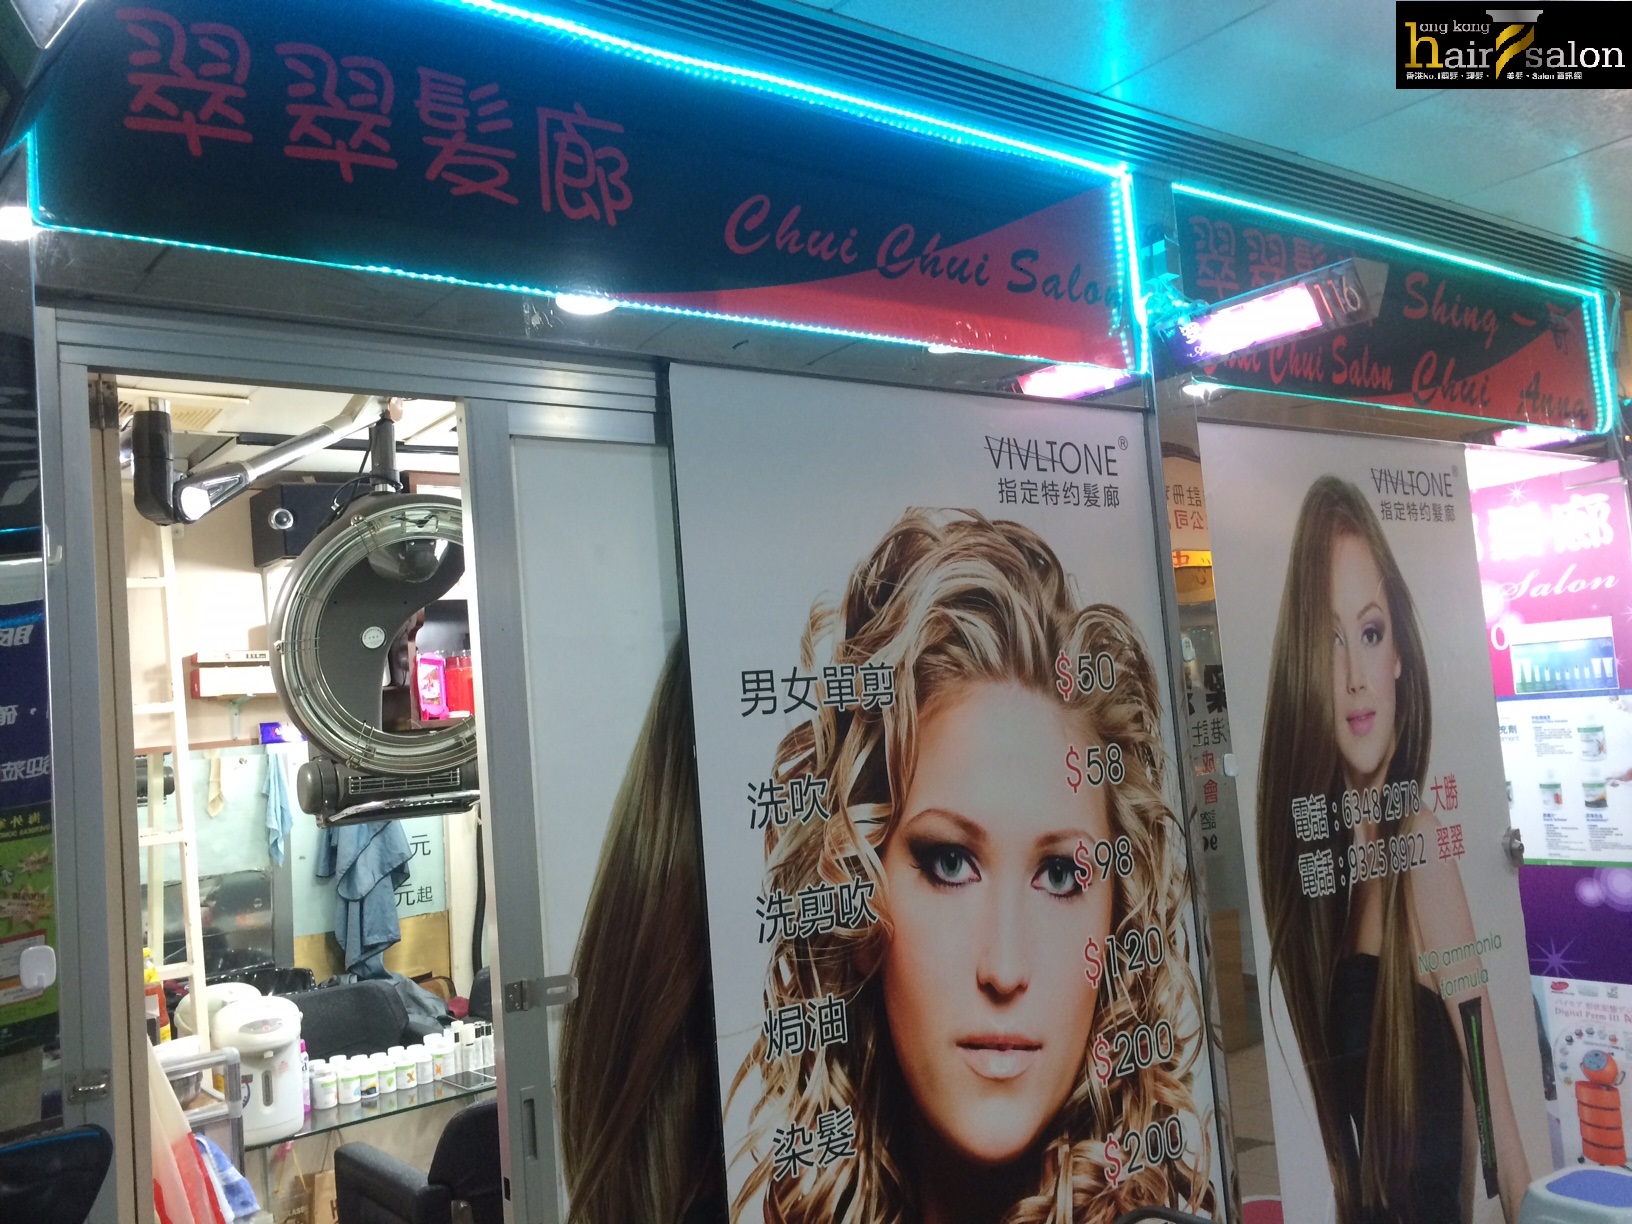 Hair Colouring: 翠翠髮廊 Chui Chui Salon